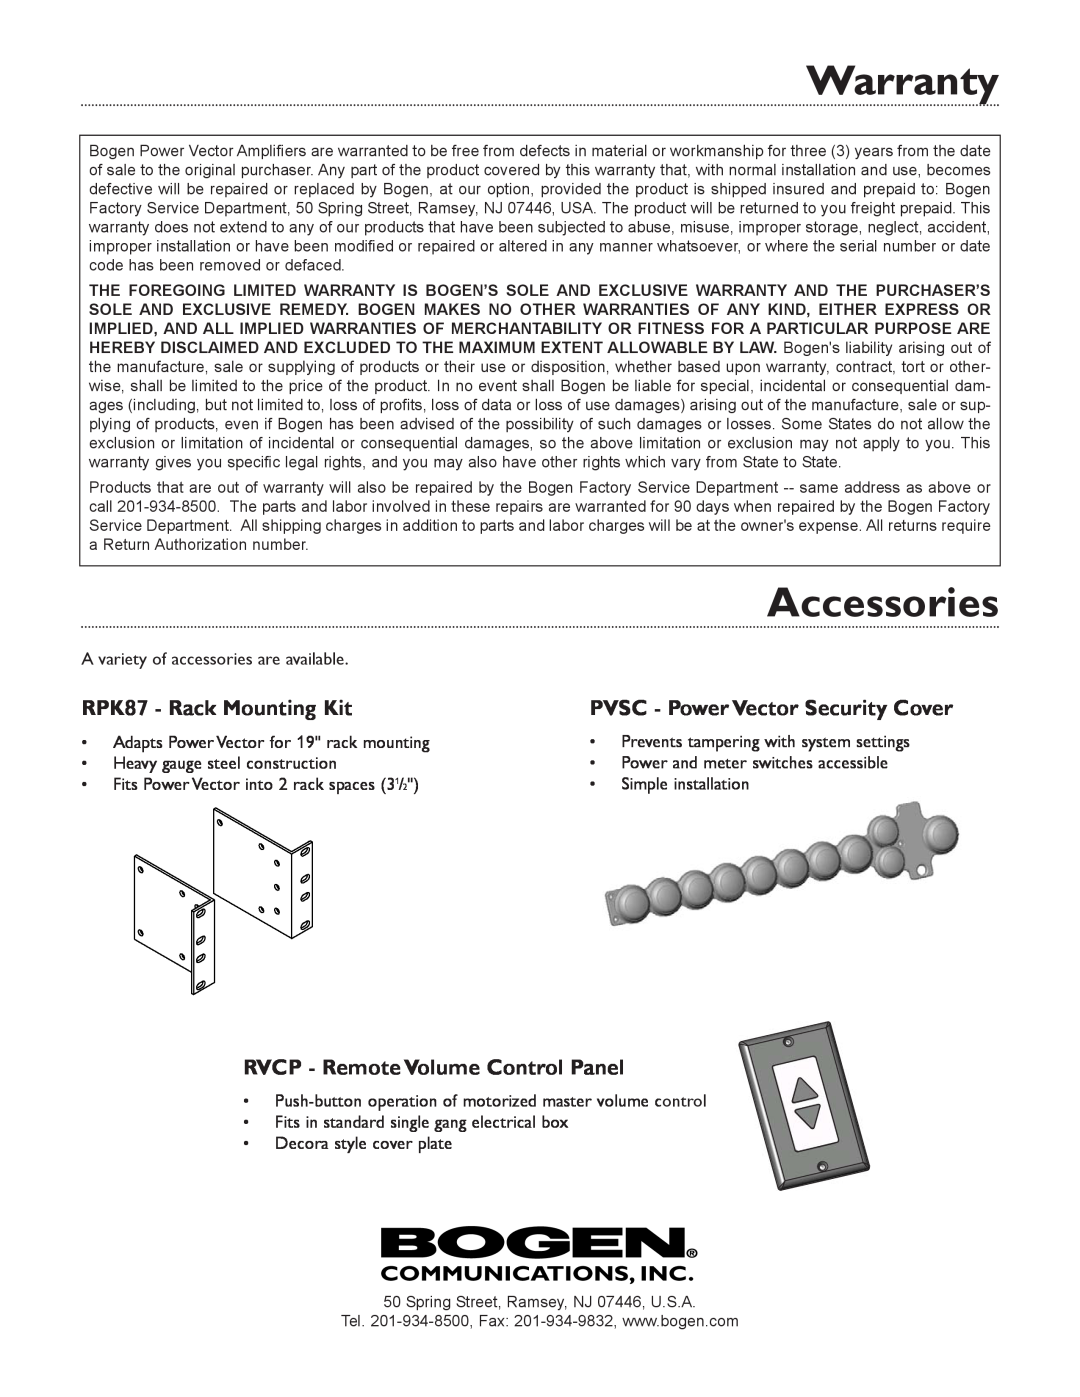 Bogen V60, V150, V100, V250 Warranty, Accessories, RPK87 - Rack Mounting Kit, RVCP - Remote Volume Control Panel 